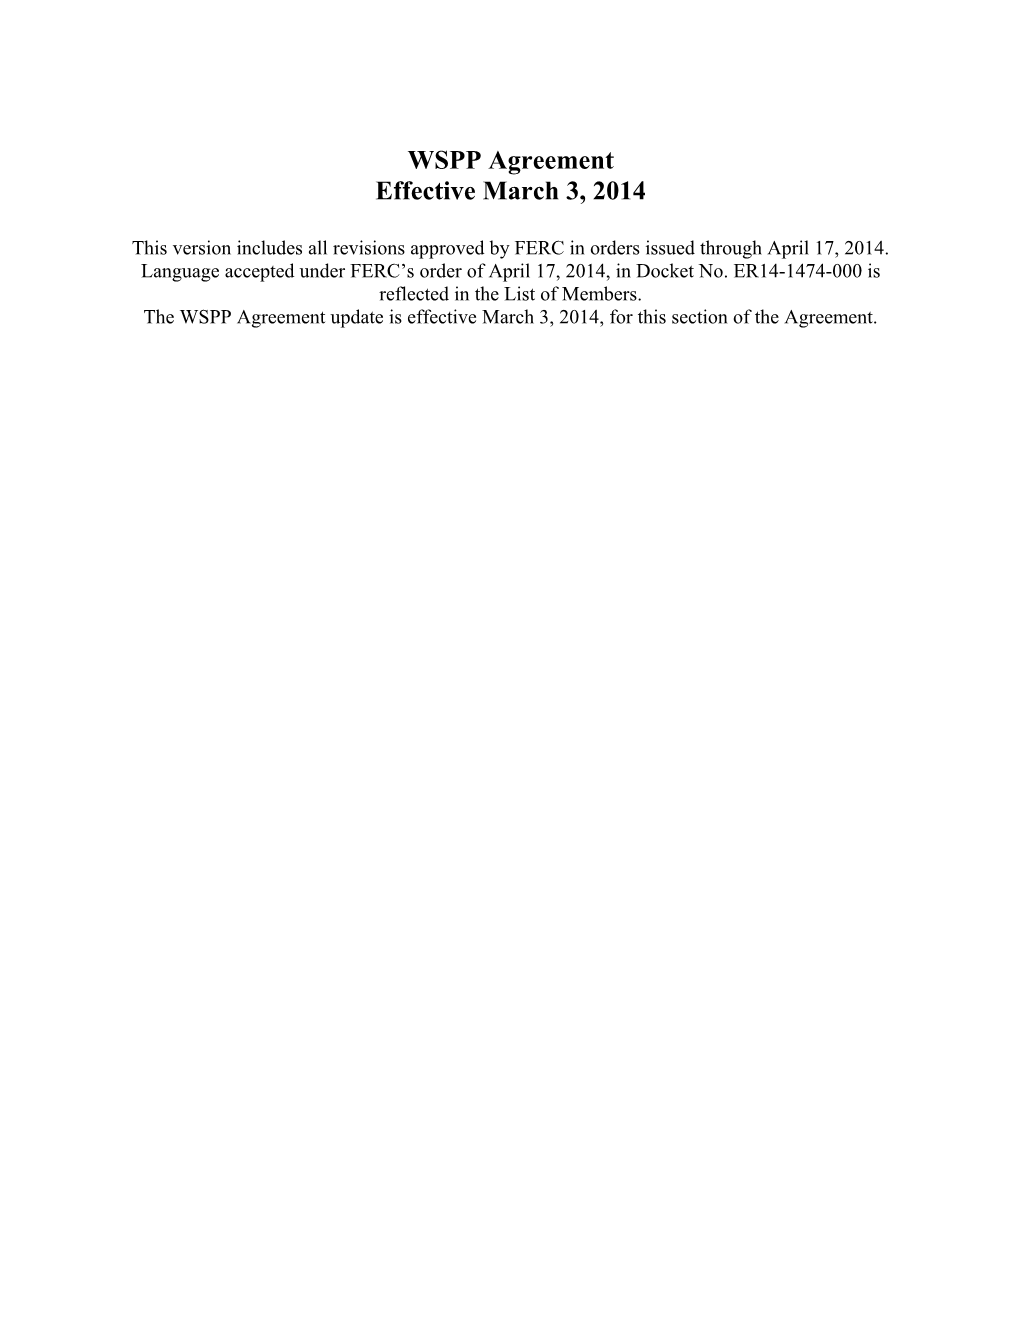 Redline March 3, 2014 WSPP Agreement Updated on 4.17.14 (W0022031;1)